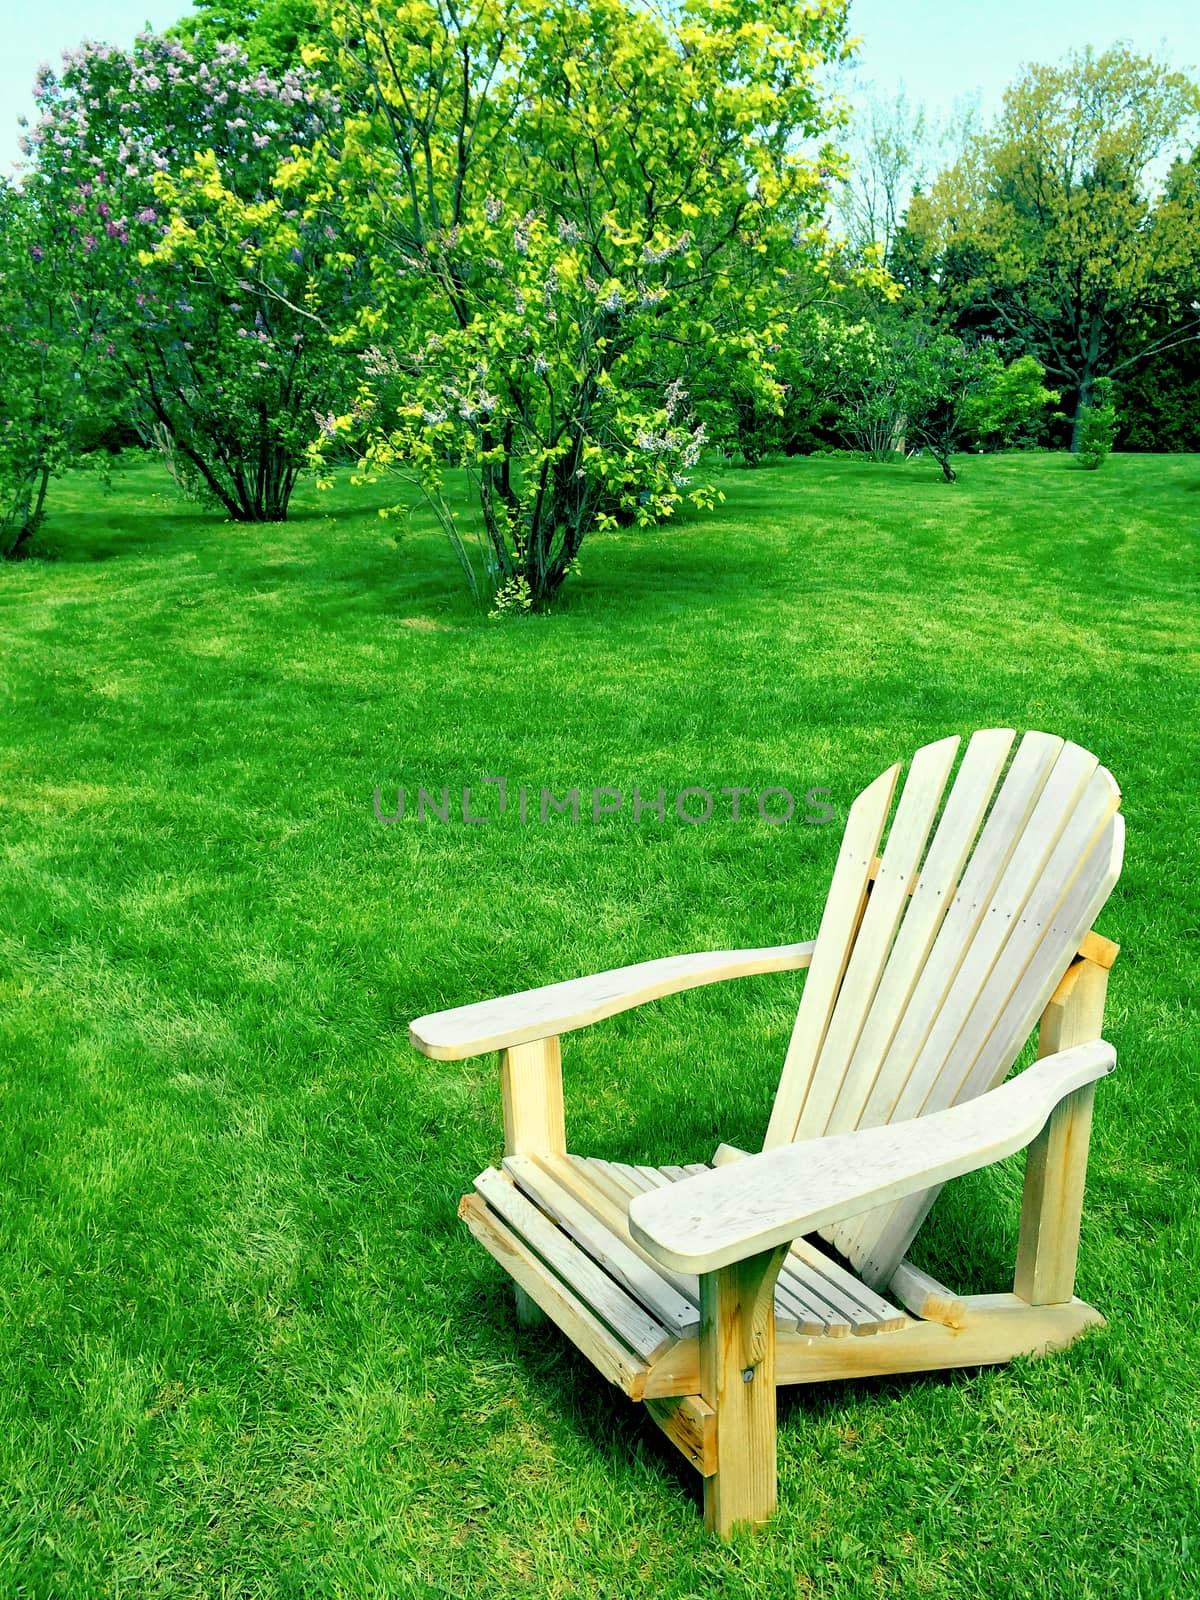 Wooden chair in spring garden by anikasalsera